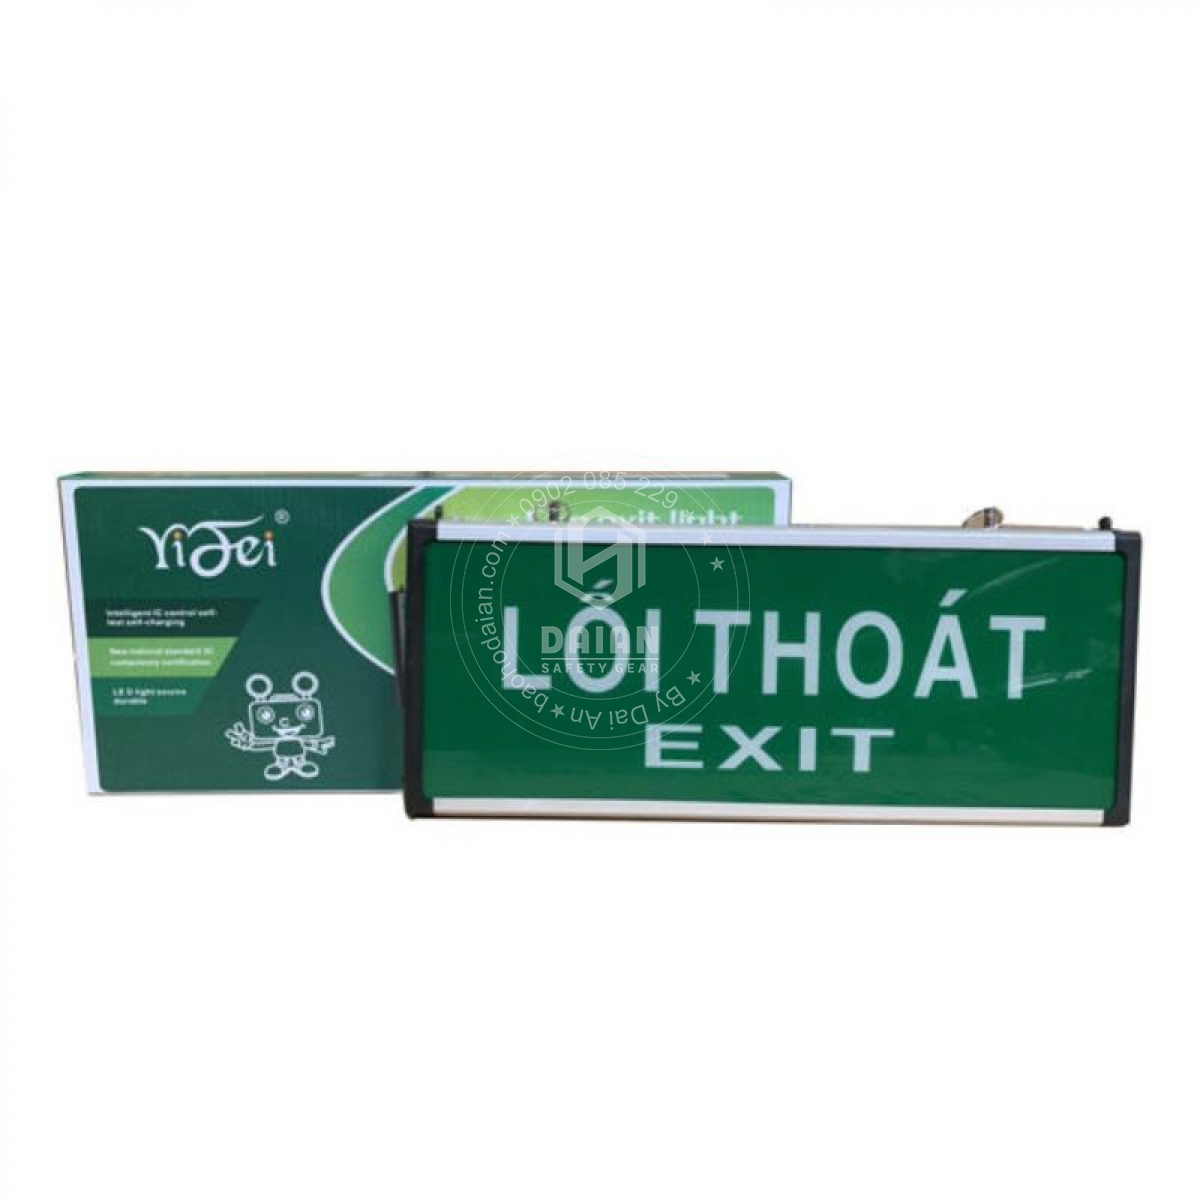 den-exit-thoat-hiem-yf1018-exit-loi-thoat